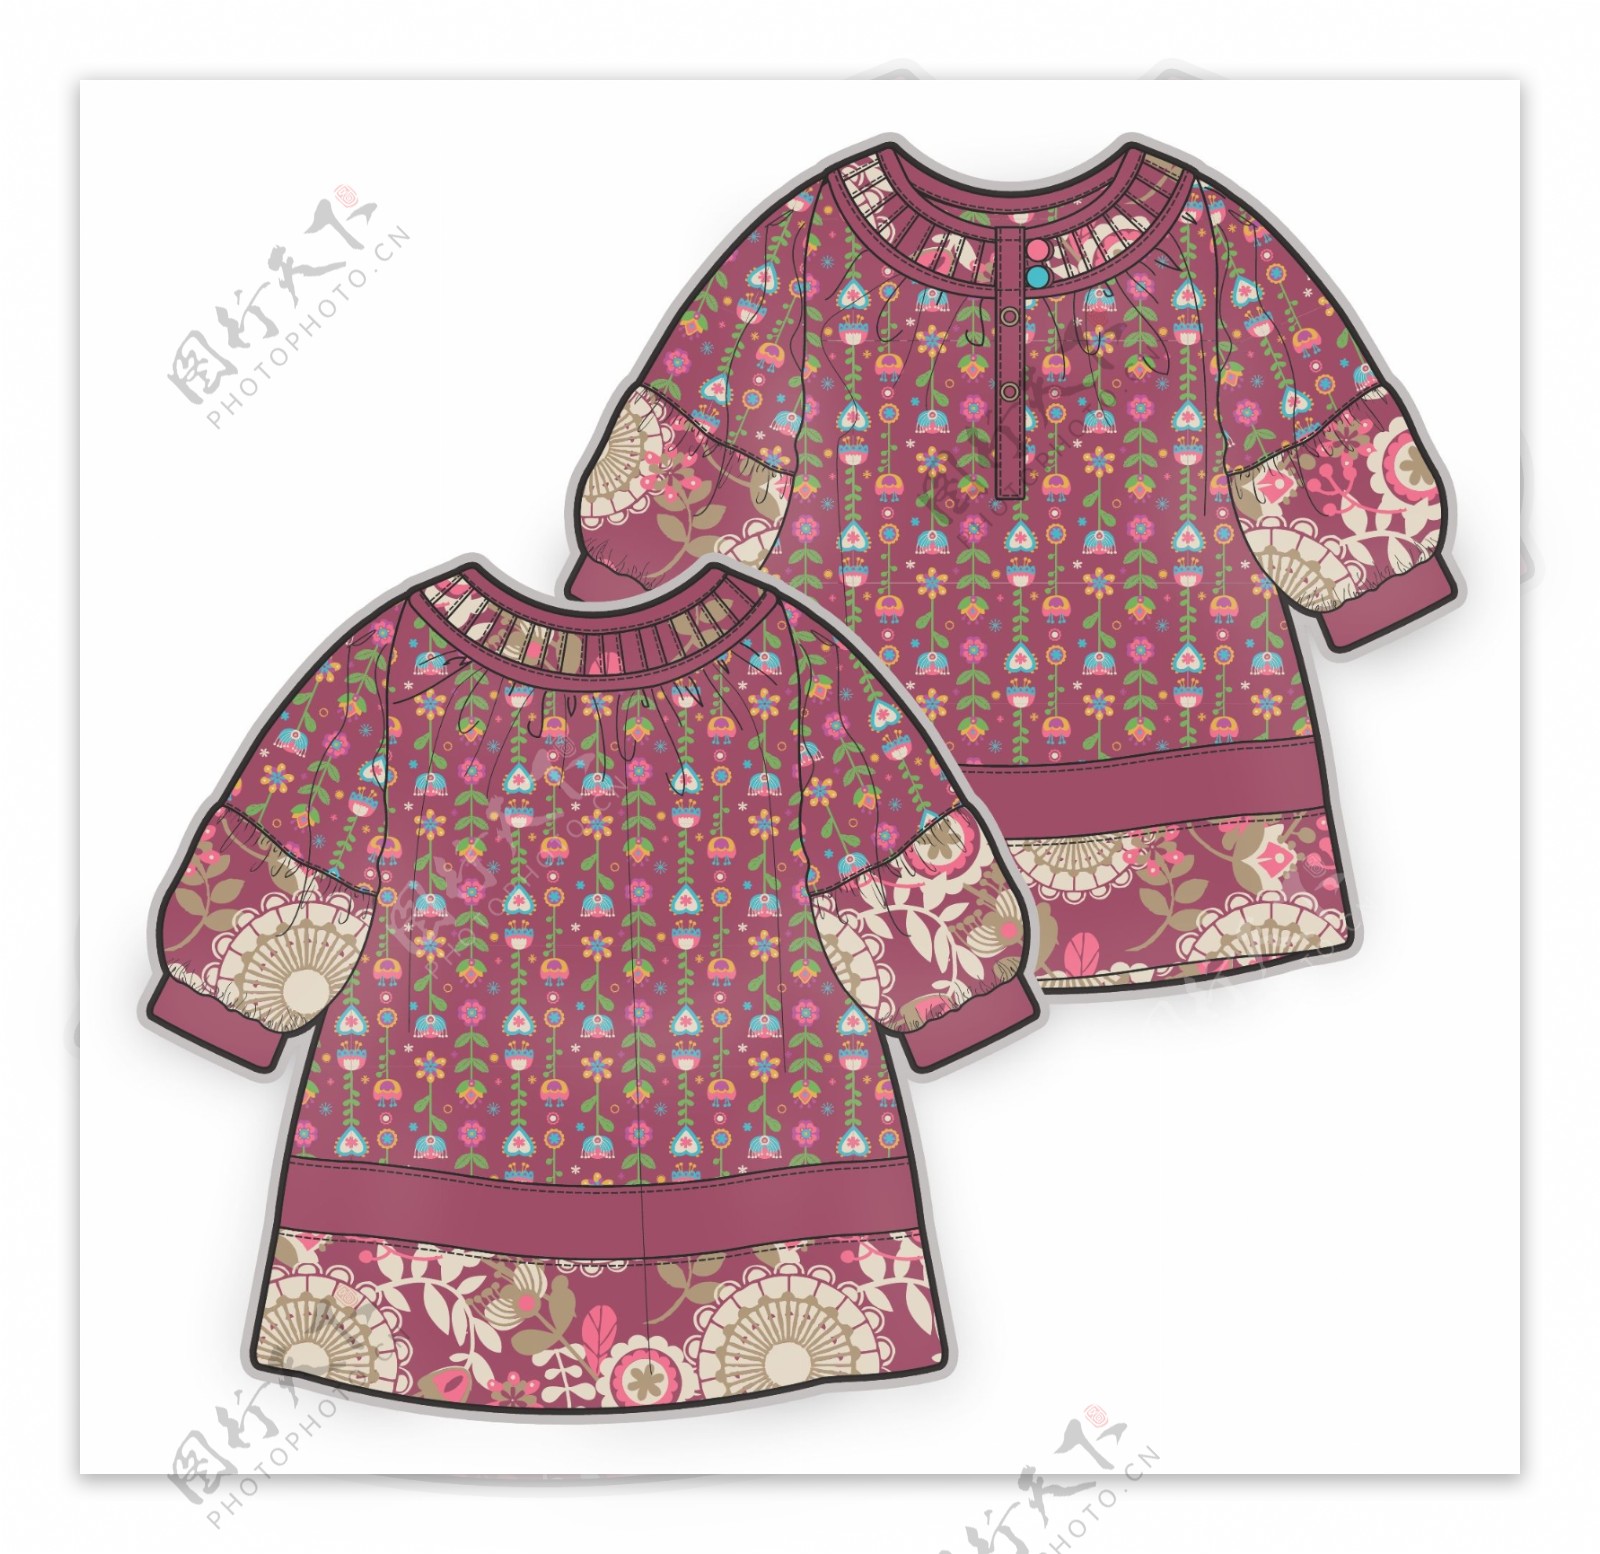 名族风长袖小女孩服装设计秋冬彩色原稿